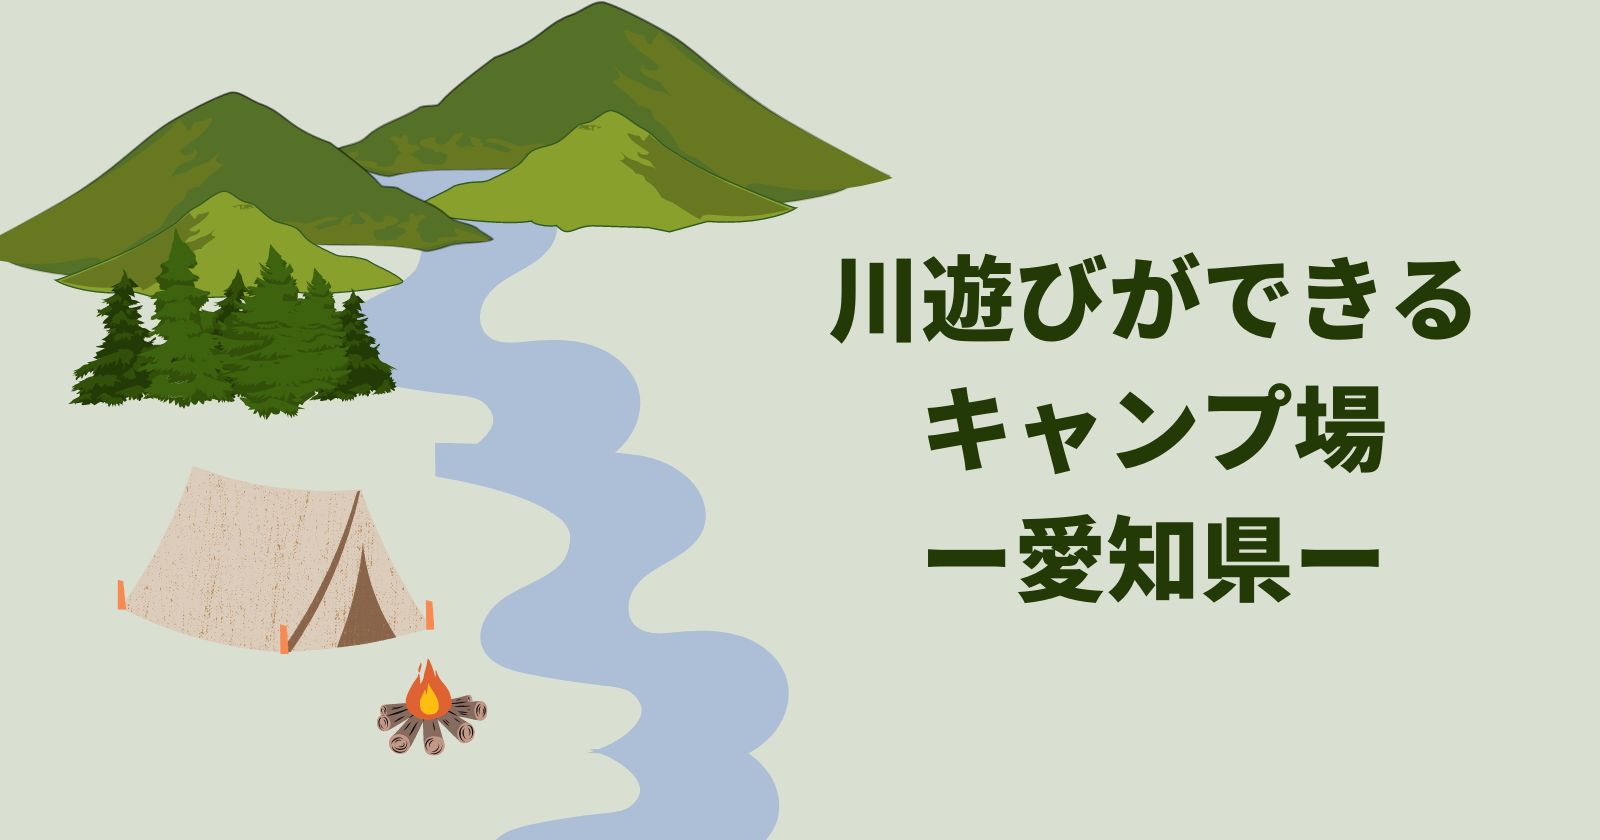 愛知県 川遊びできるキャンプ場を紹介 ふじこのソトアソビ